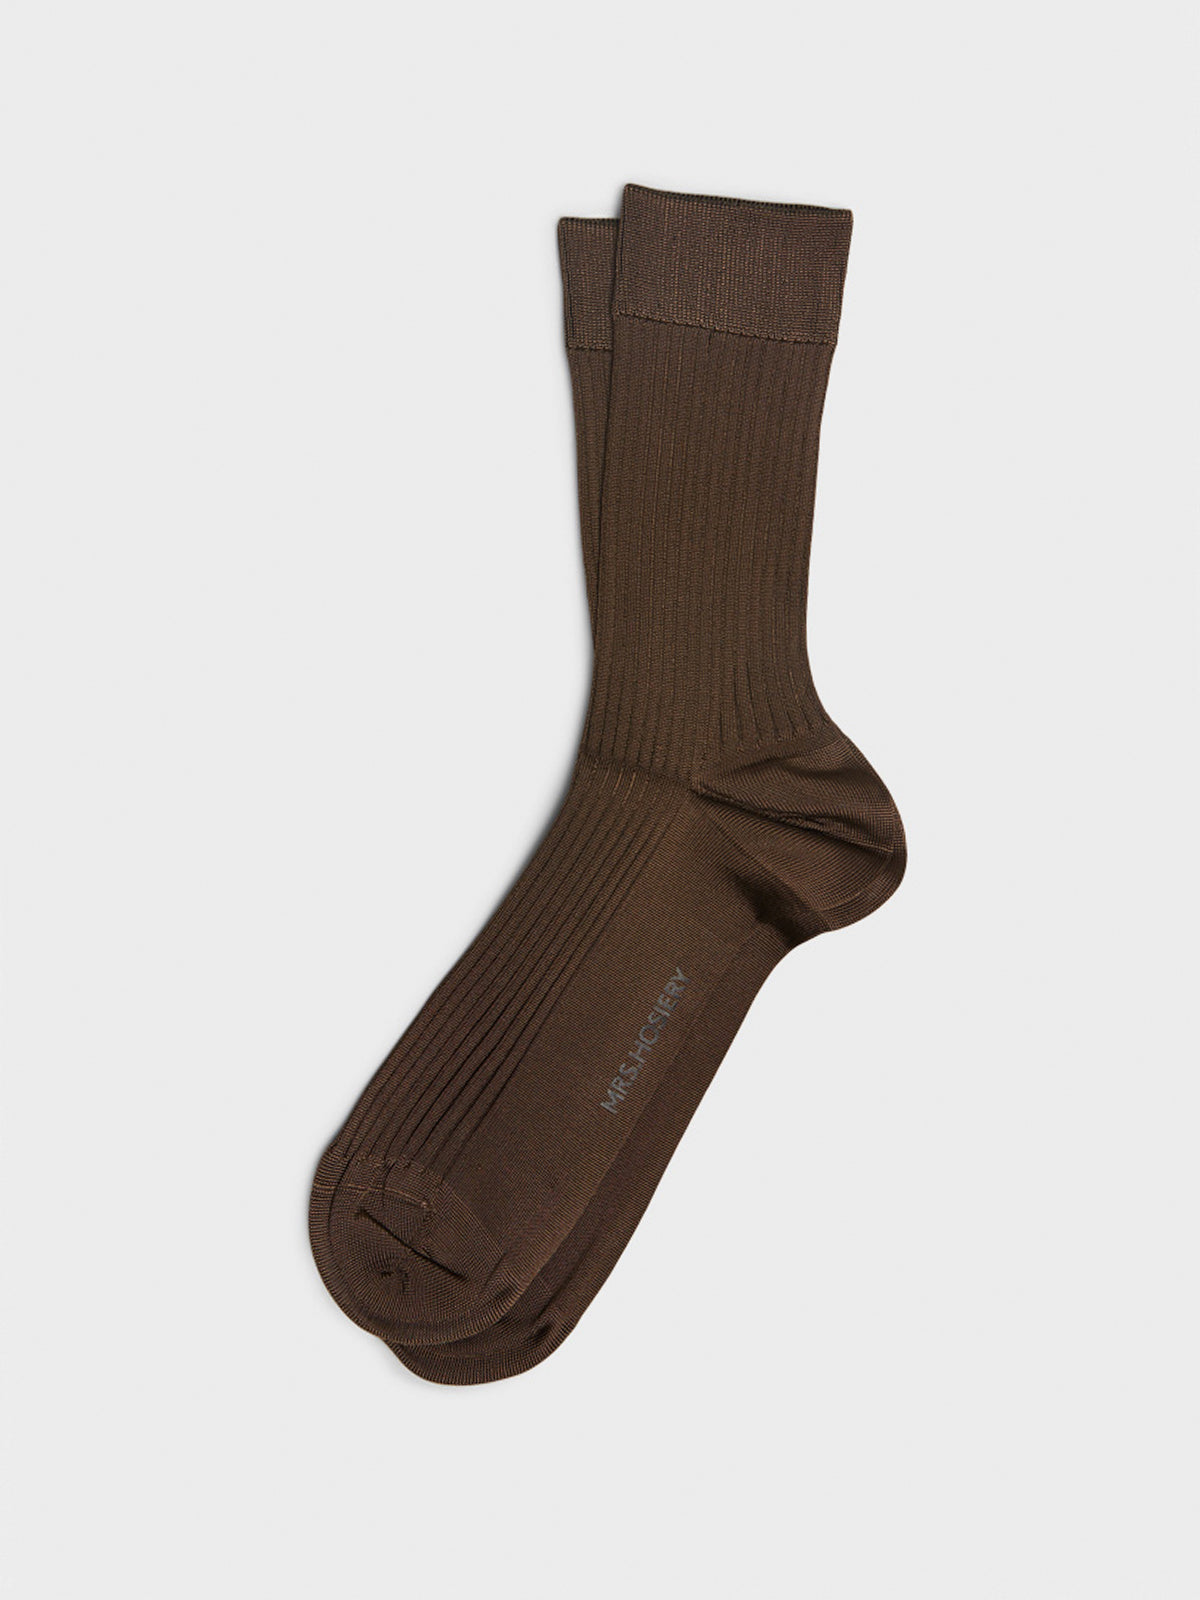 Mrs. Silky Fine Ribbed Socks in Brown